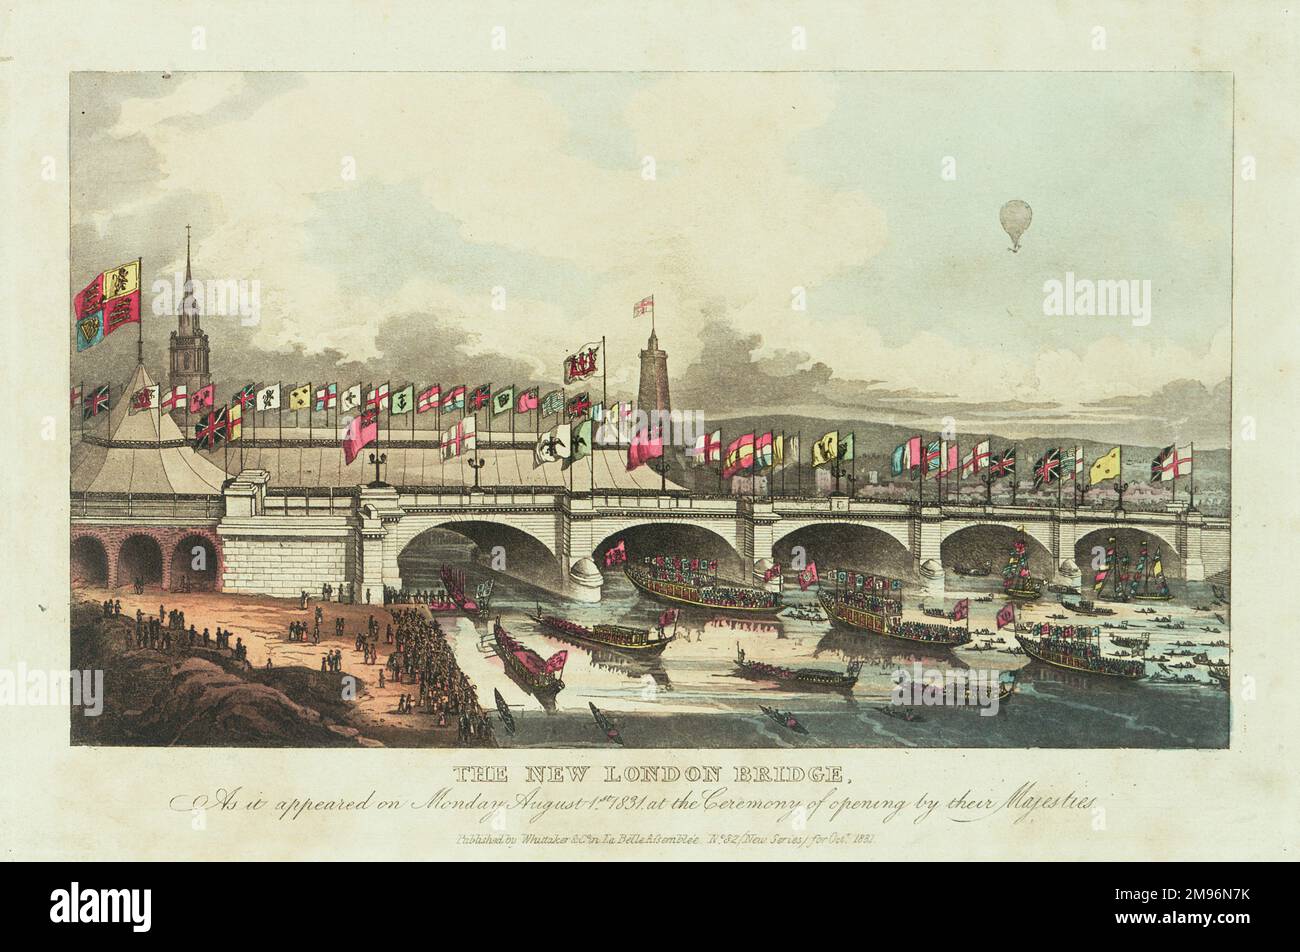 Eröffnung der New London Bridge durch König William IV. Und Königin Adelaide. Die Themse ist voller königlicher Bargen, und oben rechts ist ein Ballon zu sehen. Stockfoto